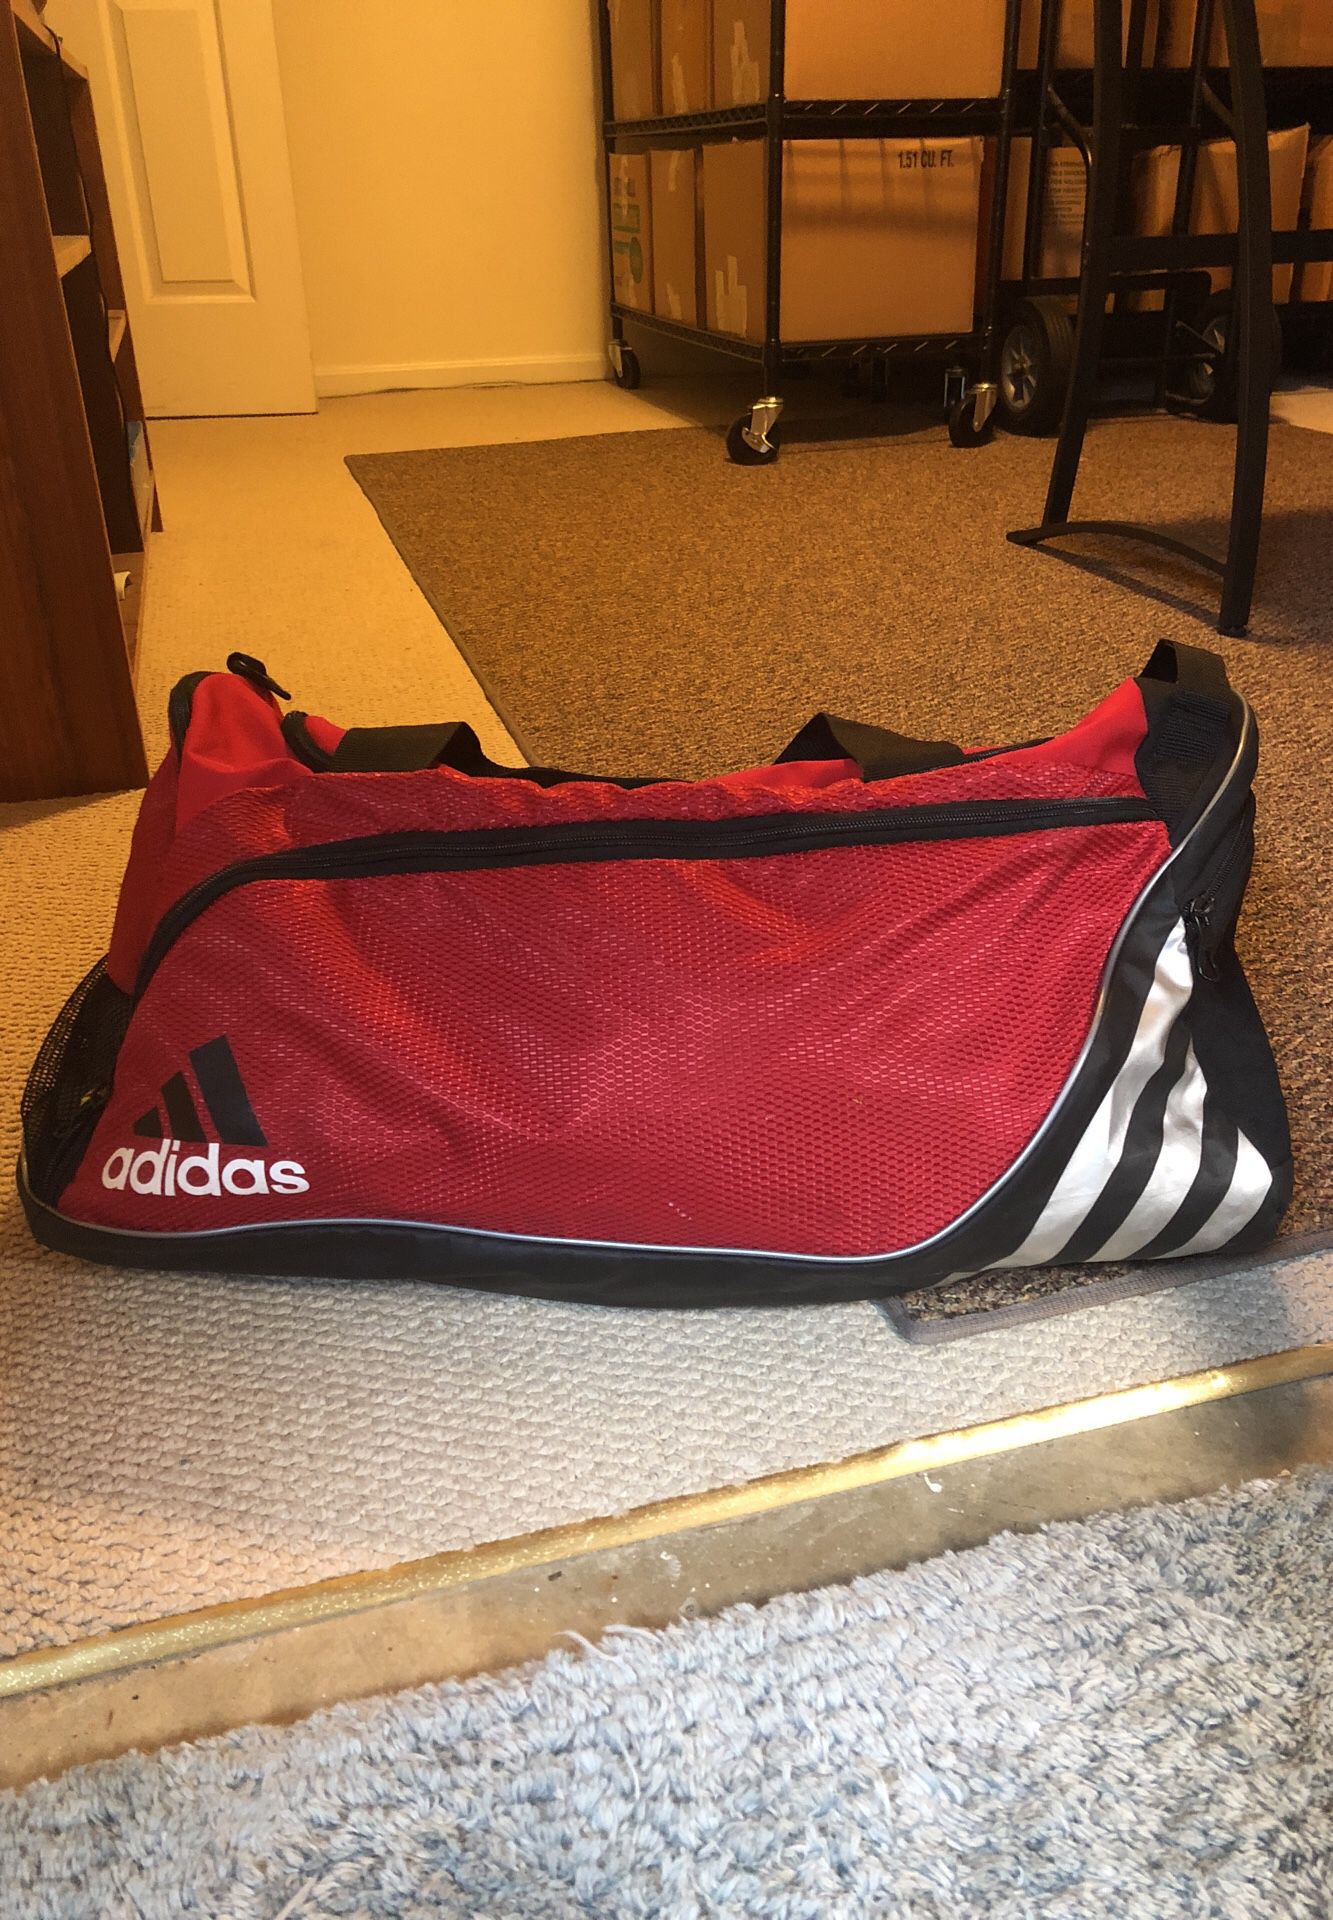 Large Adidas Duffle Bag